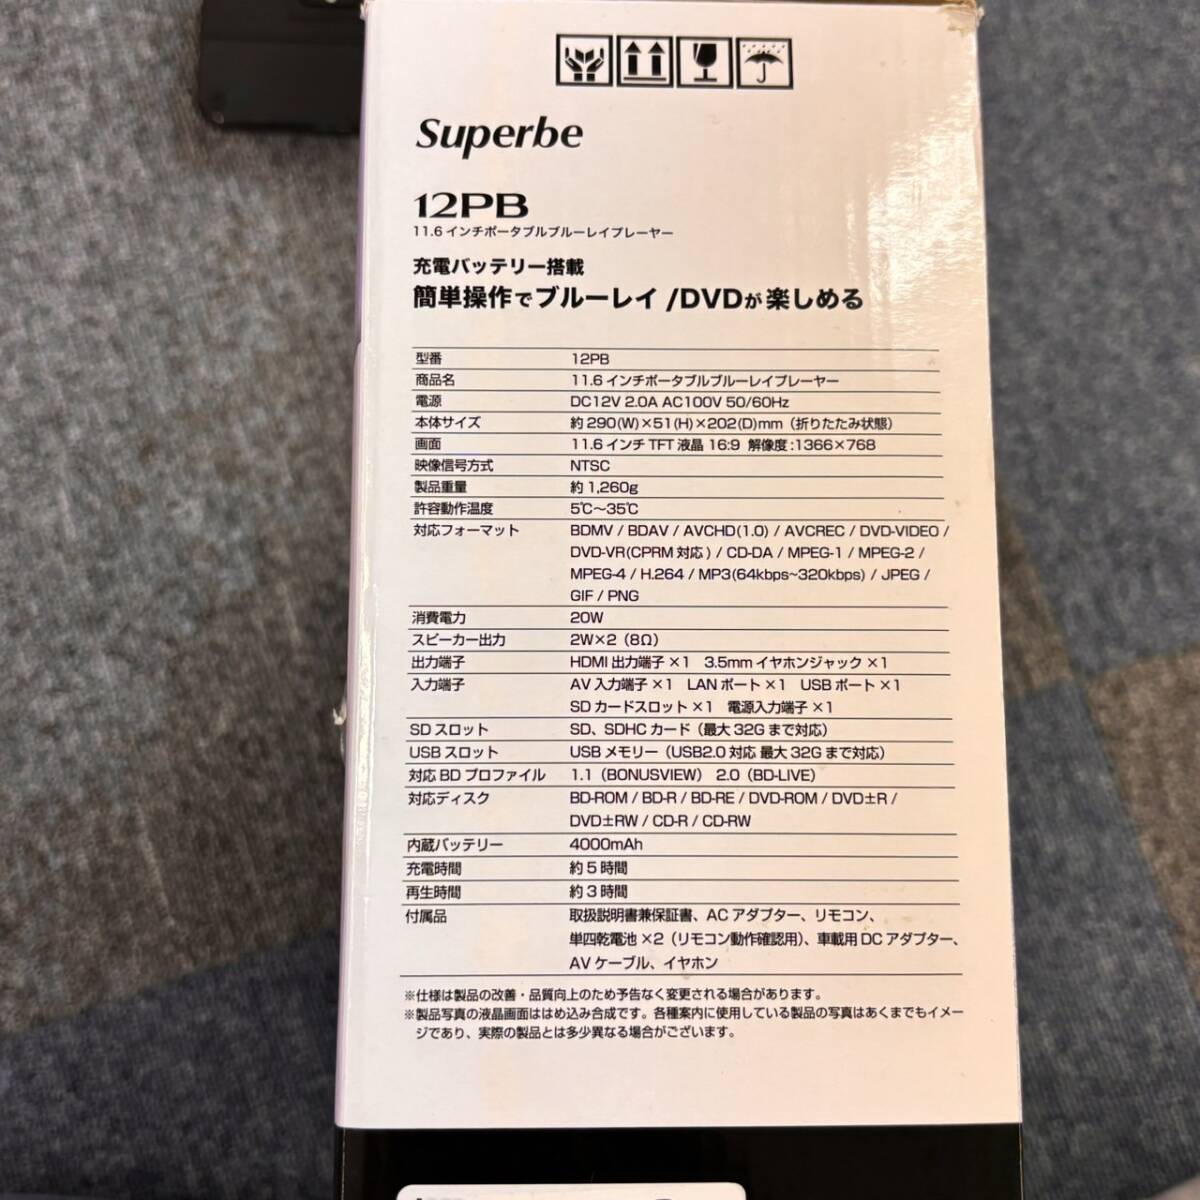 1000 иен старт [ работа товар ] UGG re расческа .n12PB Superbe 11.6 дюймовый портативный Blue-ray плеер б/у 